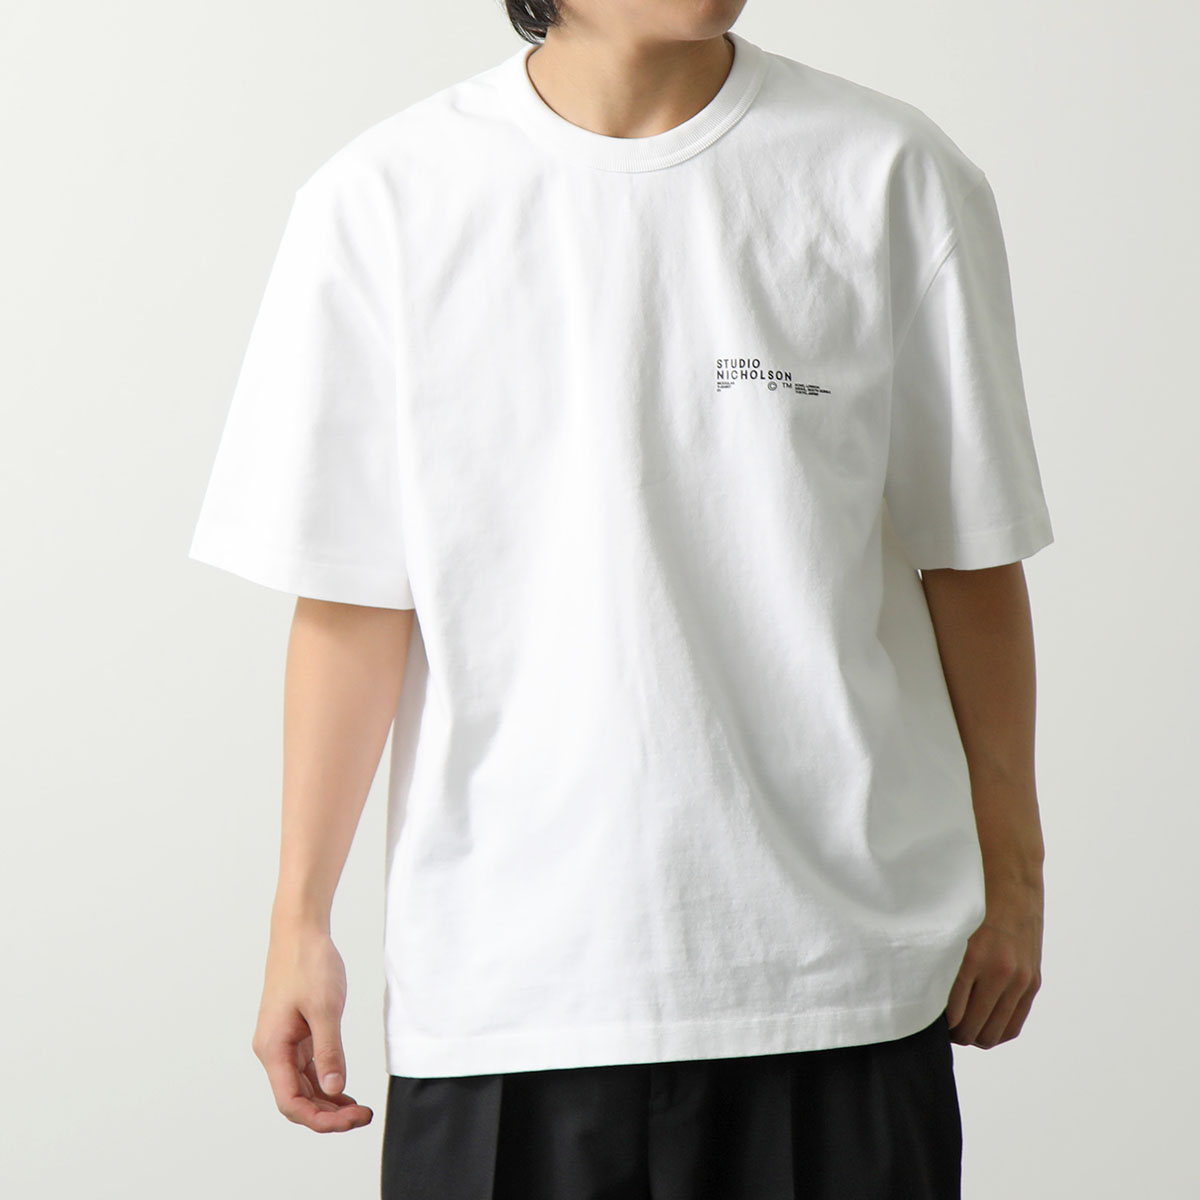 【安い売り】studio nicholson /スタジオニコルソン/半袖Tシャツ /size1/ブラック/カットソー Mサイズ